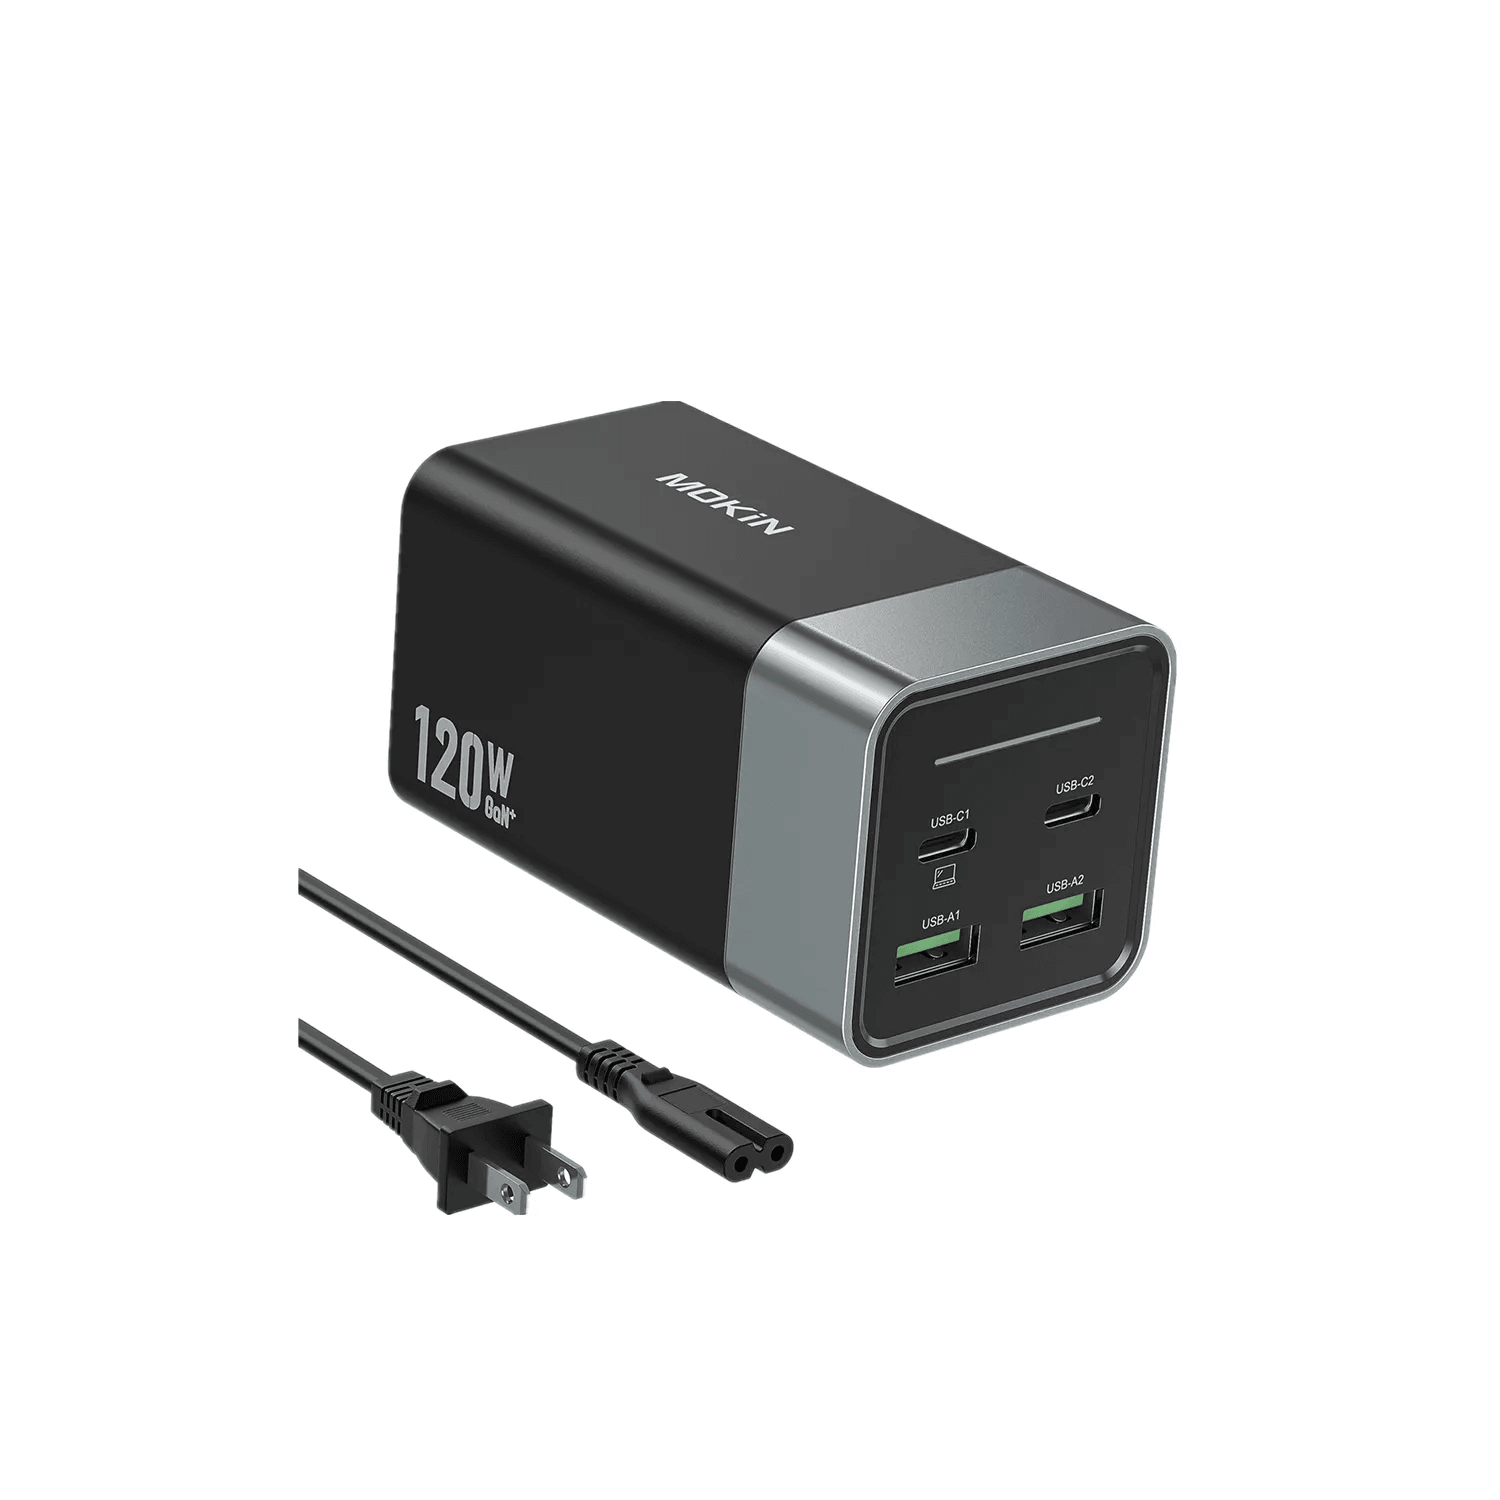 120W 4-Port Desktop USB C Charging Station - Mokin Charger